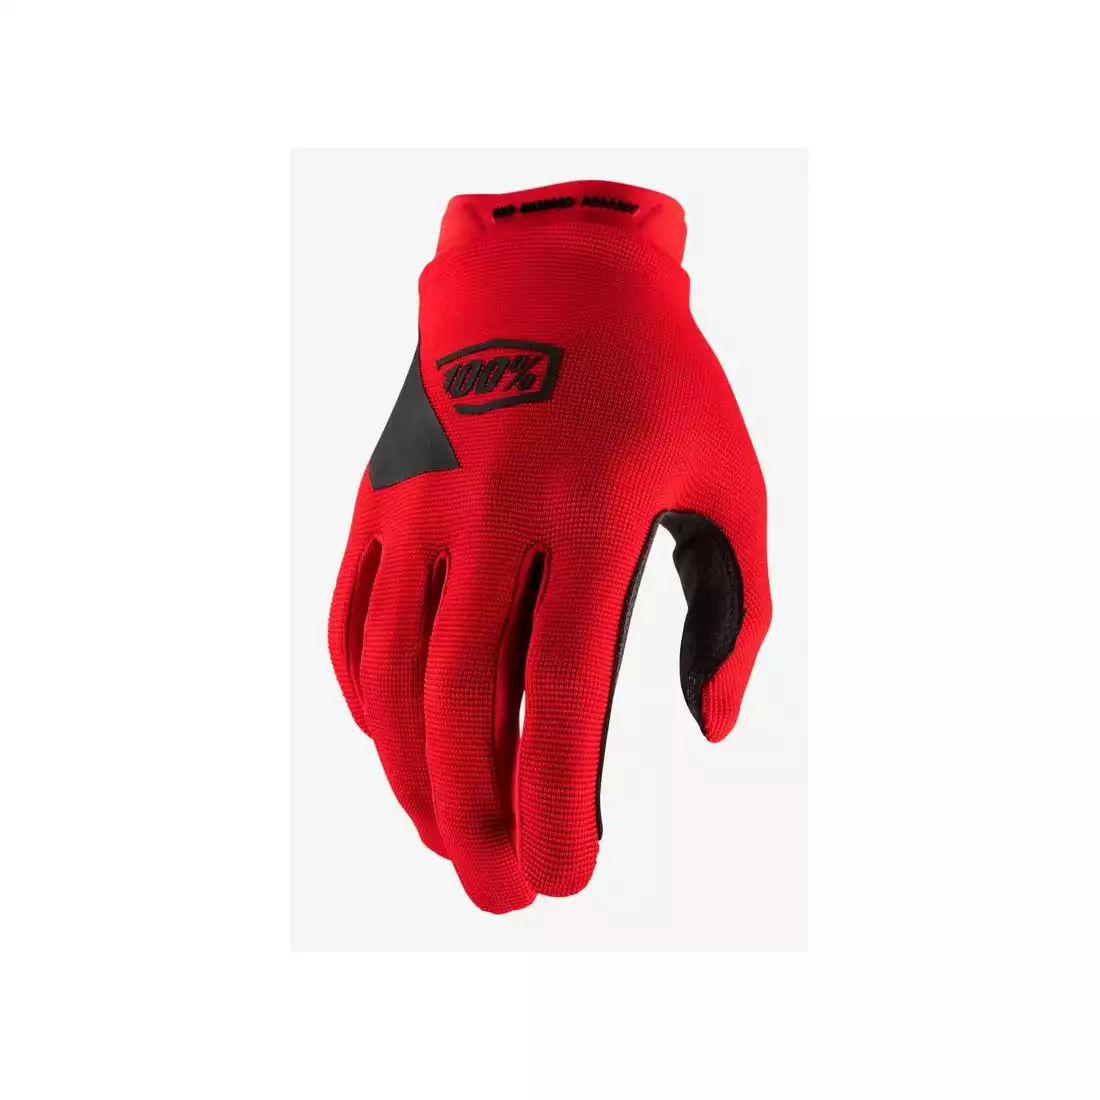 Rękawiczki 100% RIDECAMP Youth Glove red roz. L (długość dłoni 159-171 mm) (NEW) STO-10018-003-06